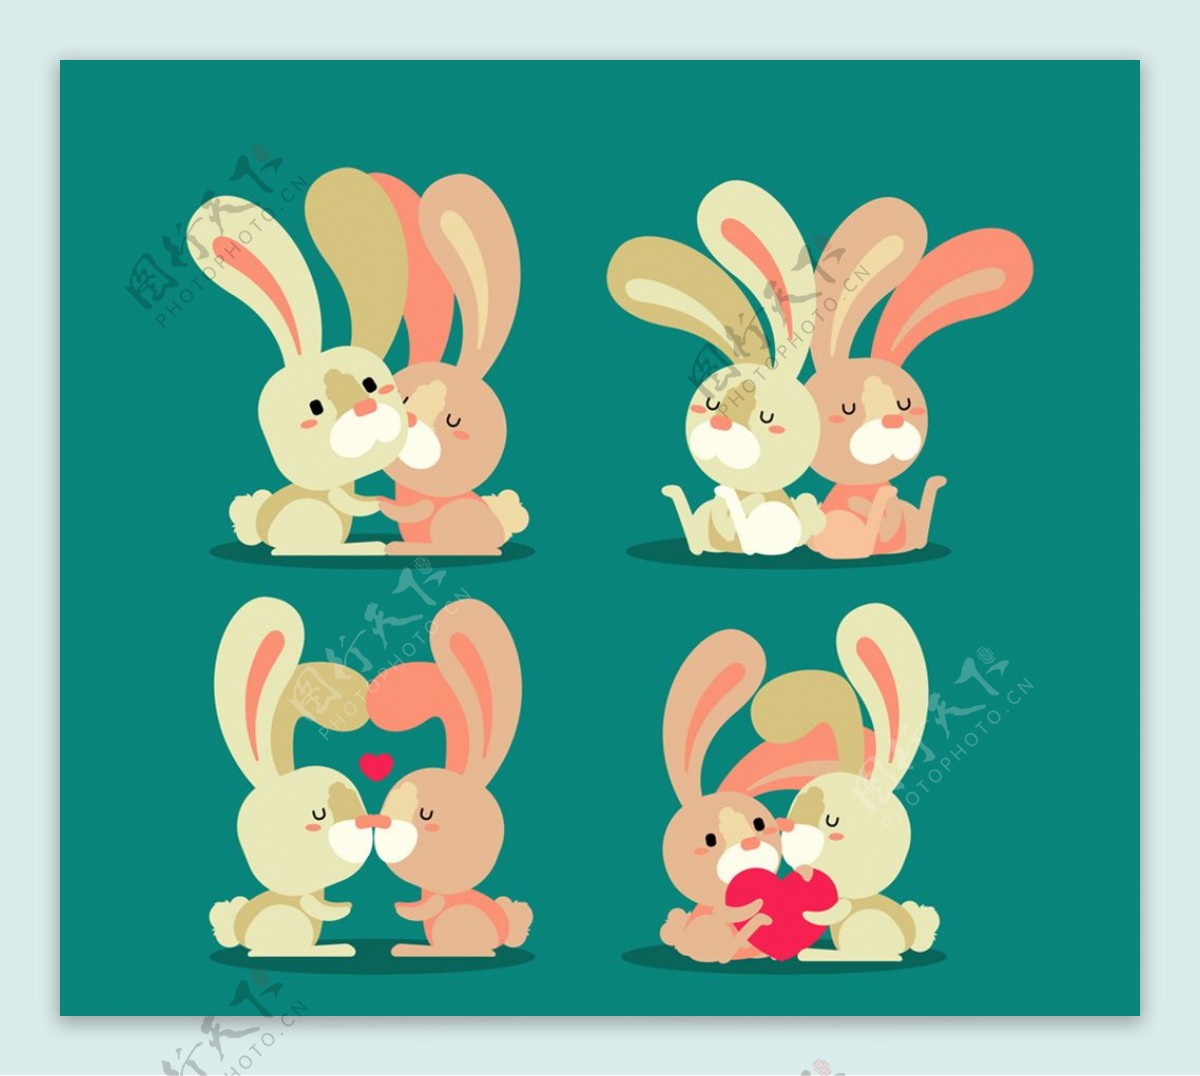 4对创意情侣兔子设计矢量素材